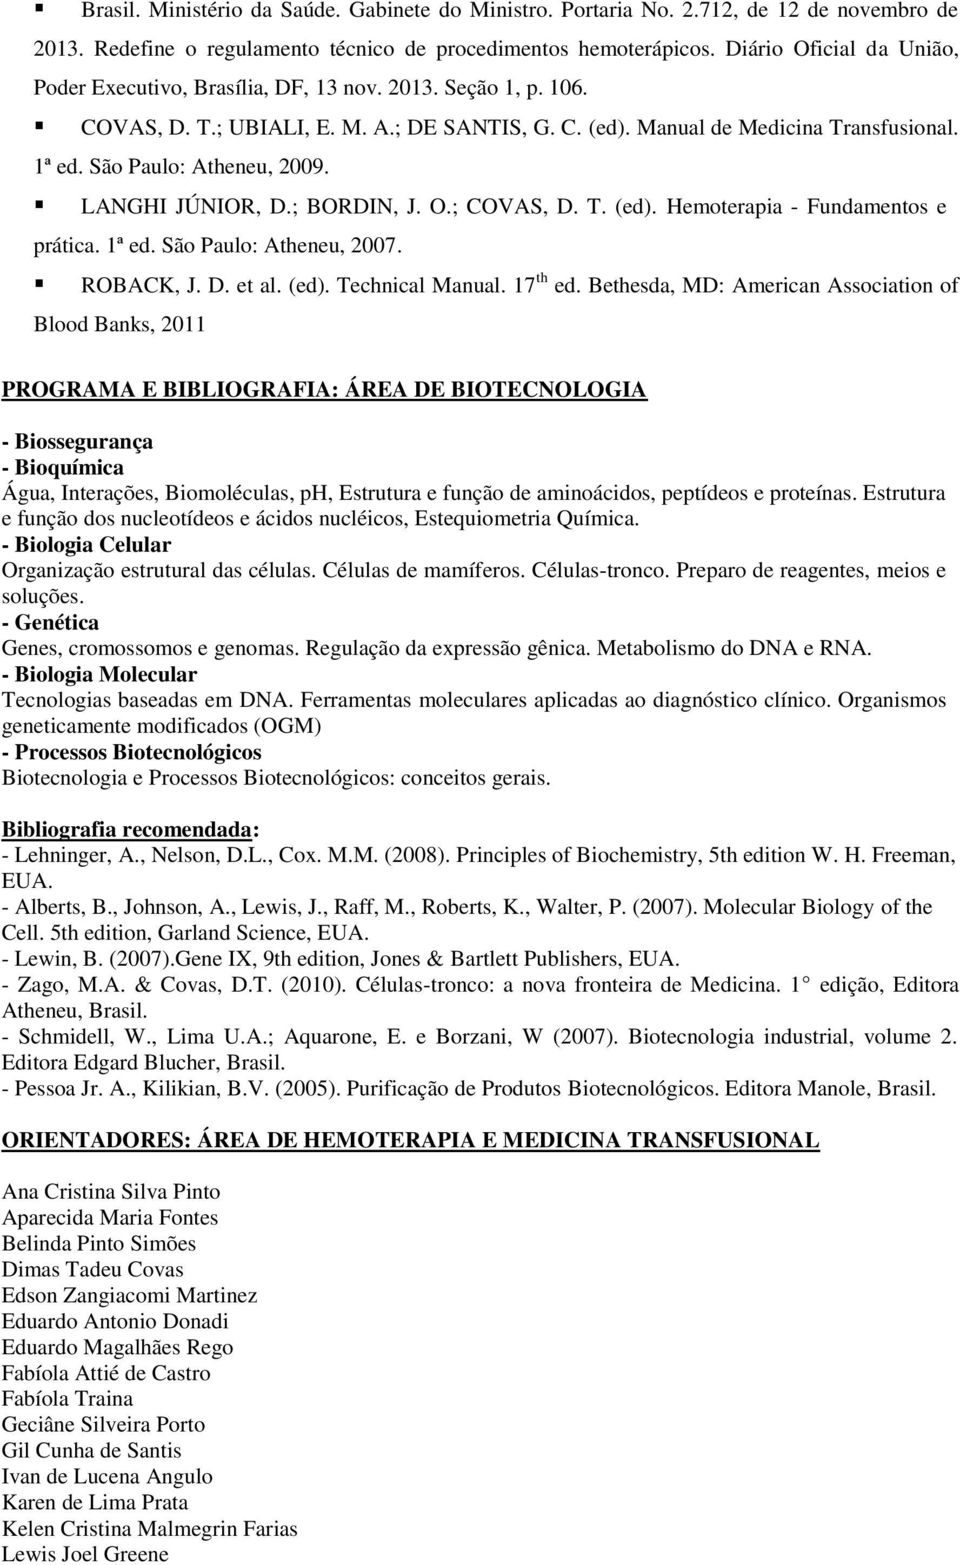 São Paulo: Atheneu, 2009. LANGHI JÚNIOR, D.; BORDIN, J. O.; COVAS, D. T. (ed). Hemoterapia - Fundamentos e prática. 1ª ed. São Paulo: Atheneu, 2007. ROBACK, J. D. et al. (ed). Technical Manual.